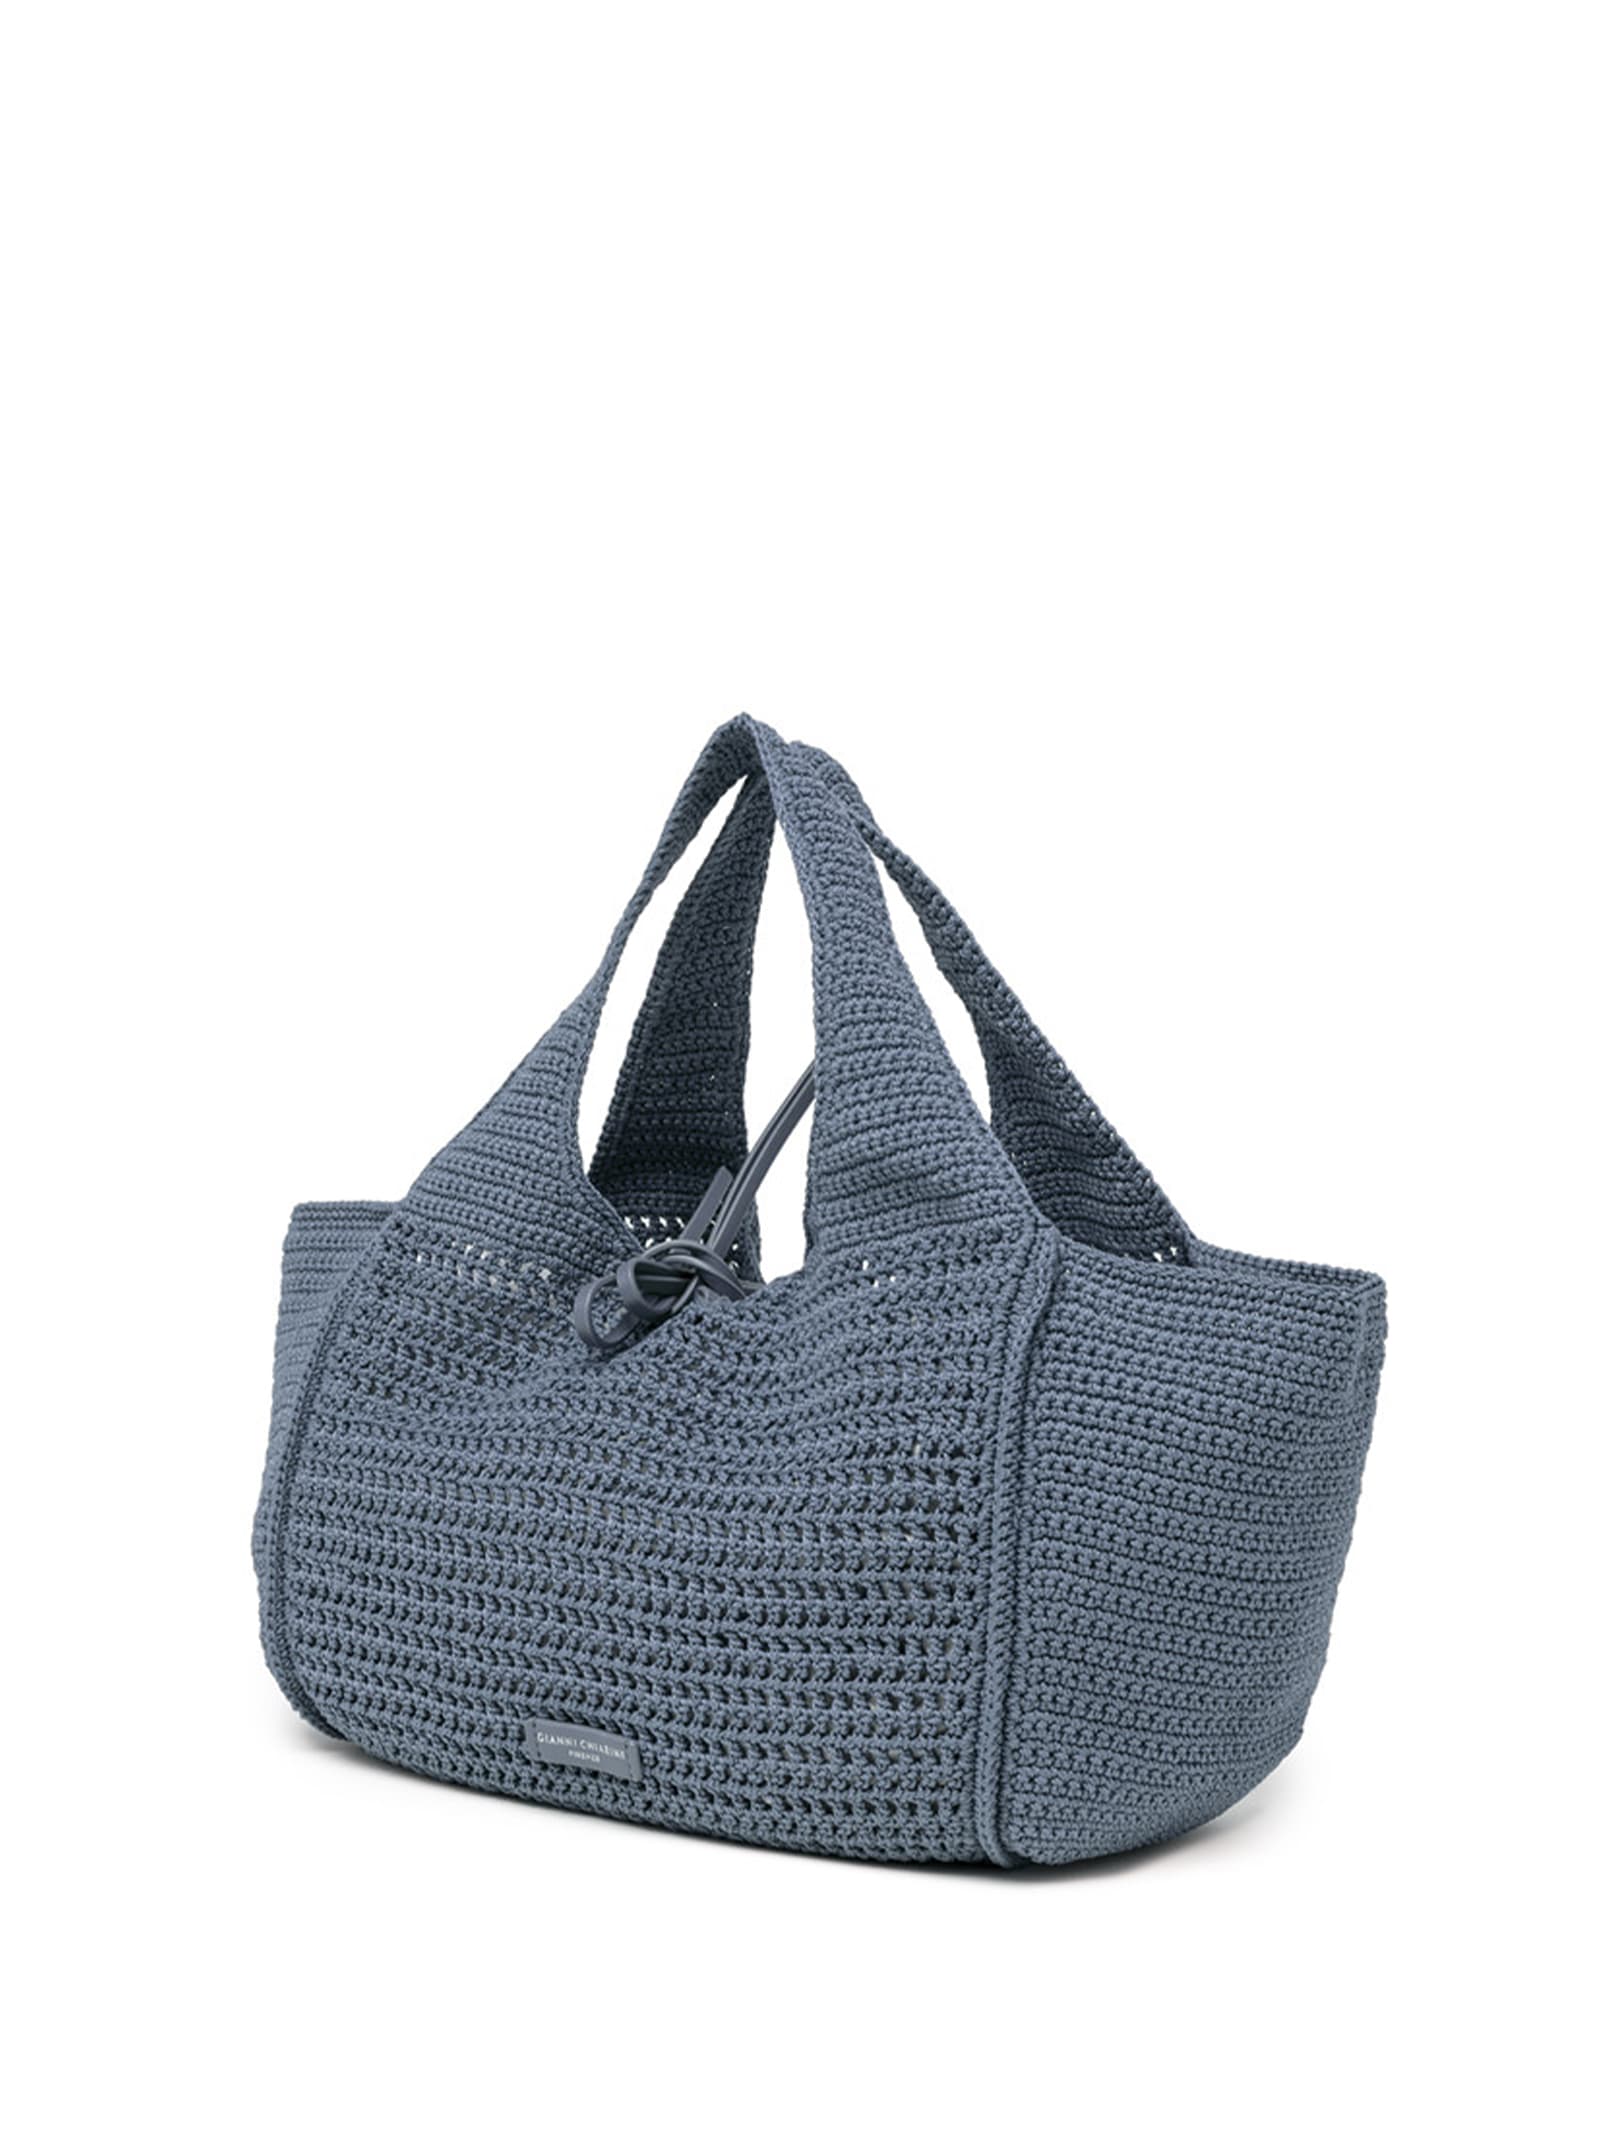 Shop Gianni Chiarini Euforia Bluette Shopping Bag In Crochet Fabric In Artico